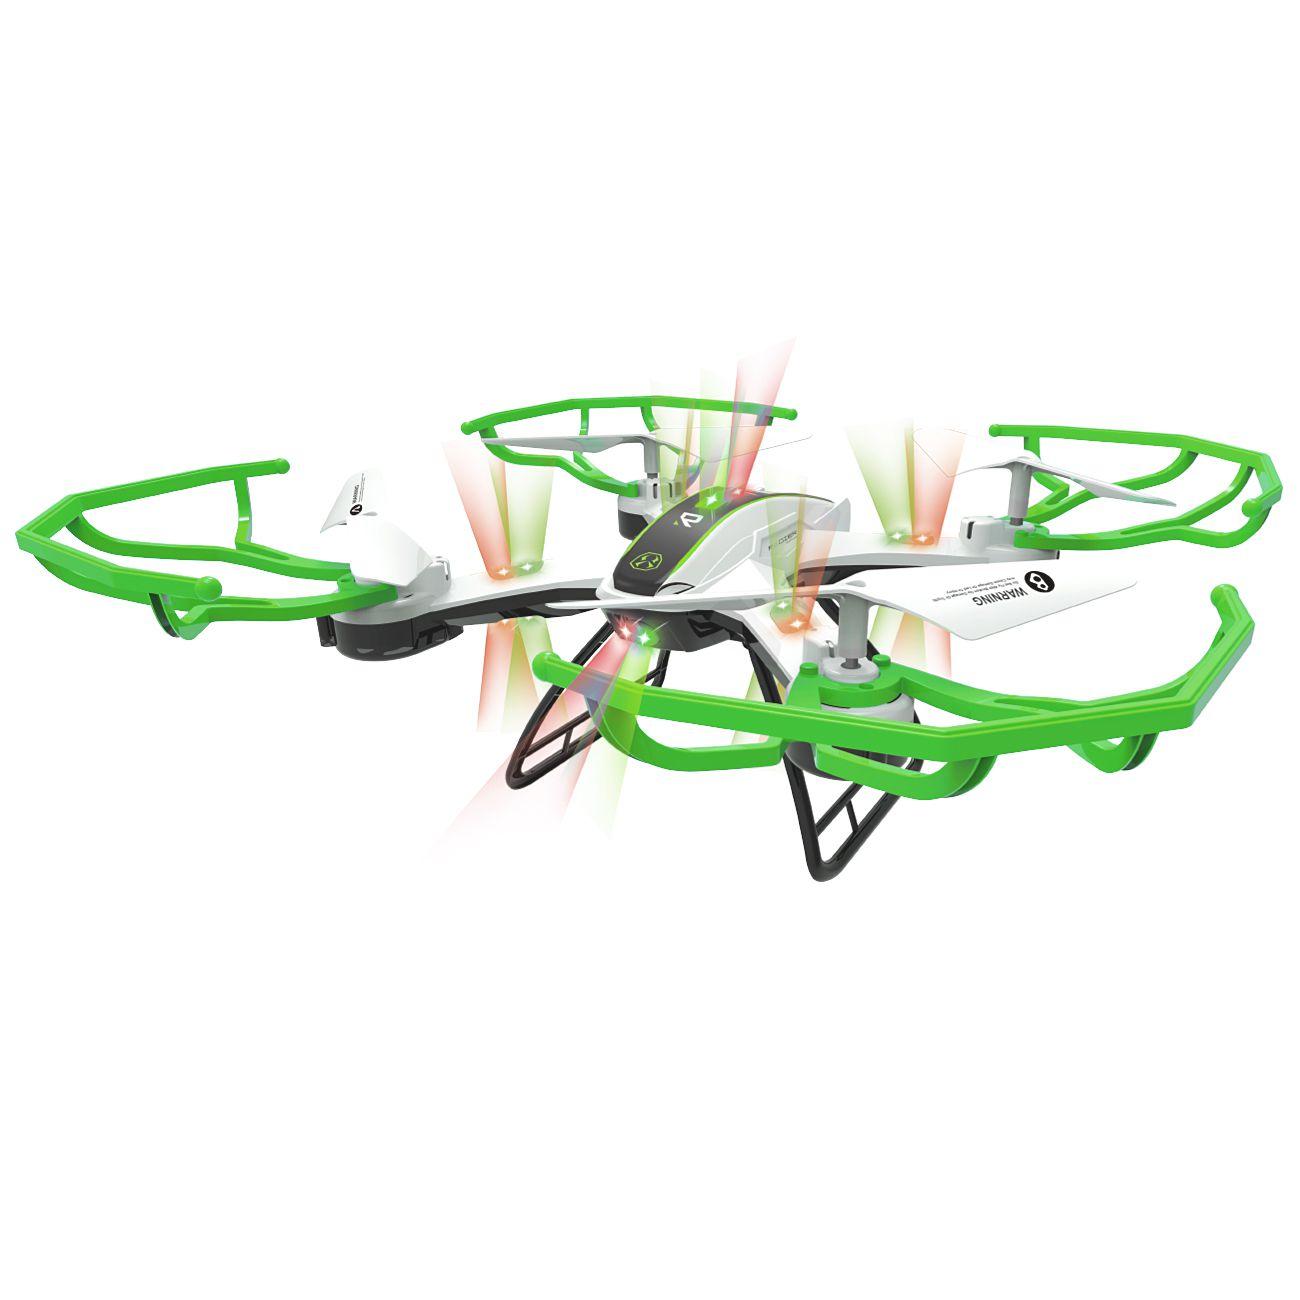 Selected image for DENIS Quadrocopter zeleni zeleni